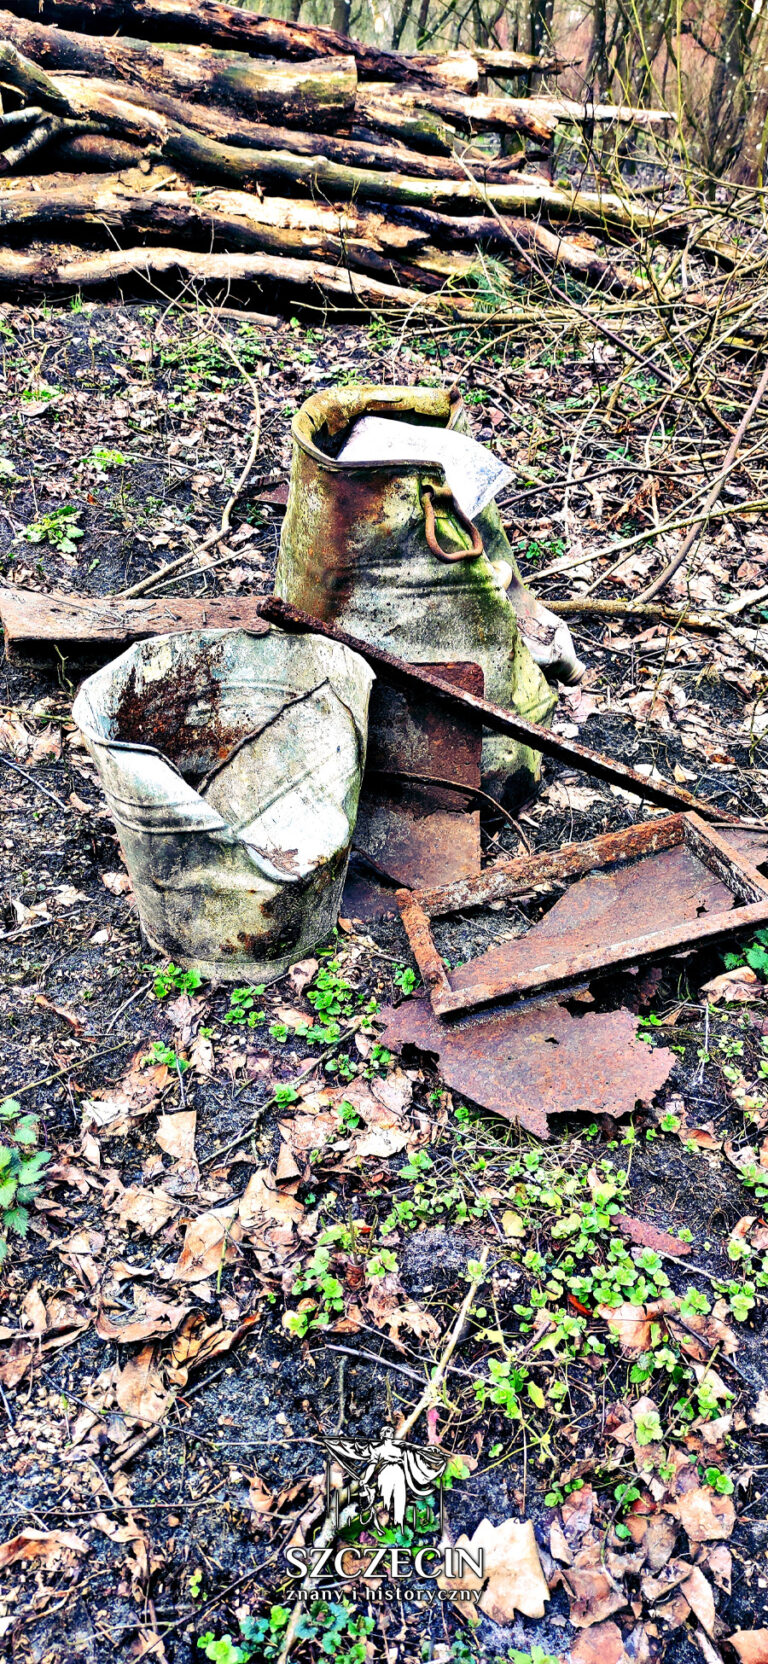 Resztki wiader, złomu i metalowych przedmiotów zrzucone przez dzikich poszukiwaczy